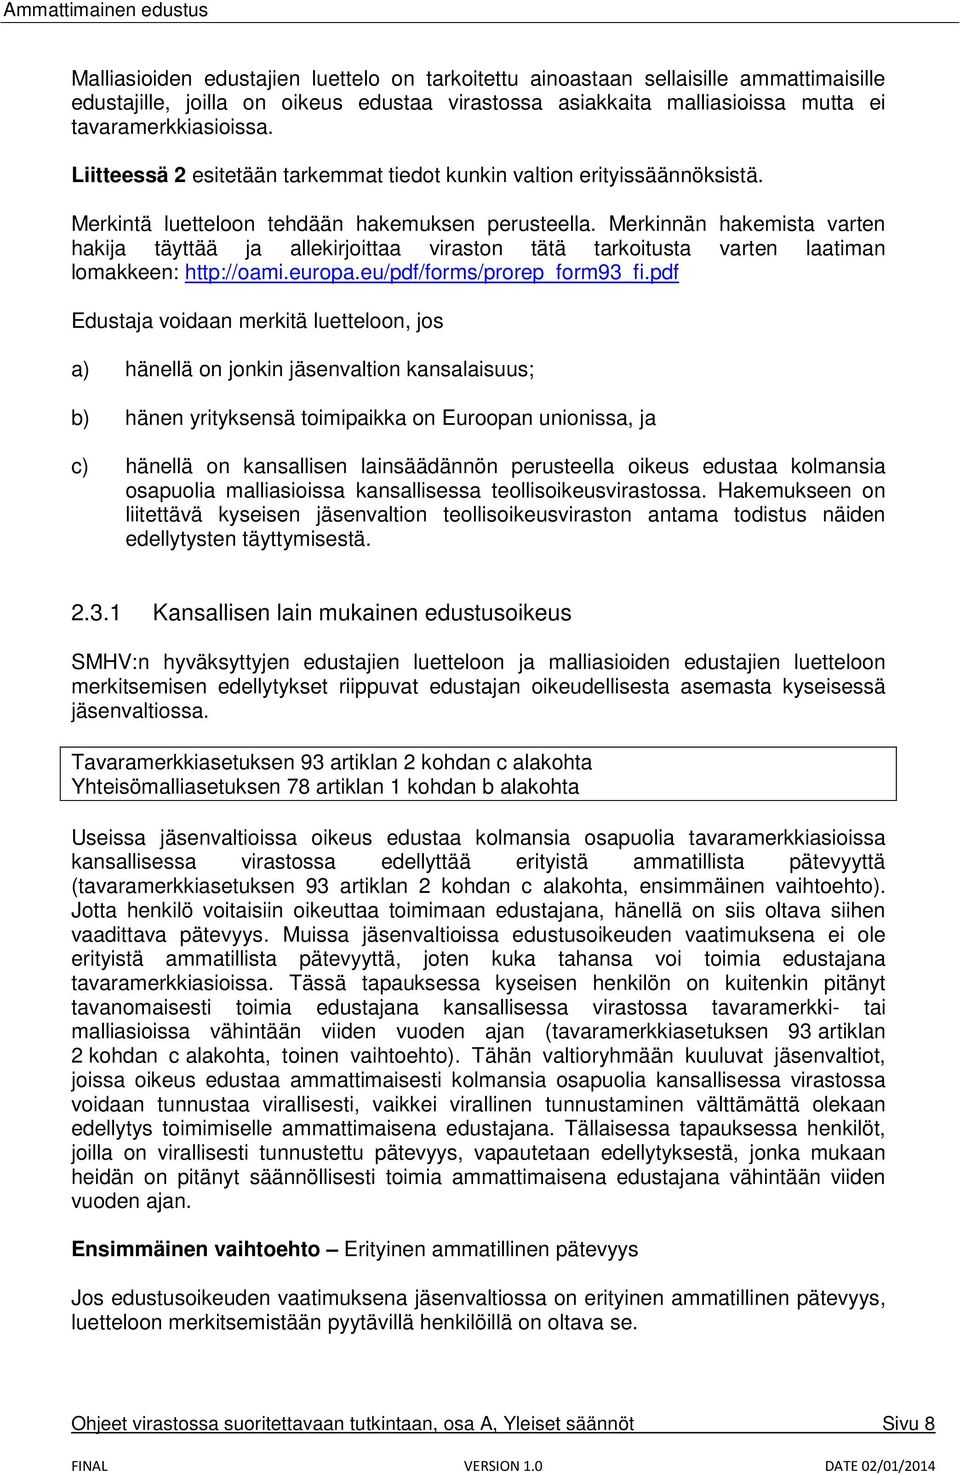 Merkinnän hakemista varten hakija täyttää ja allekirjoittaa viraston tätä tarkoitusta varten laatiman lomakkeen: http://oami.europa.eu/pdf/forms/prorep_form93_fi.